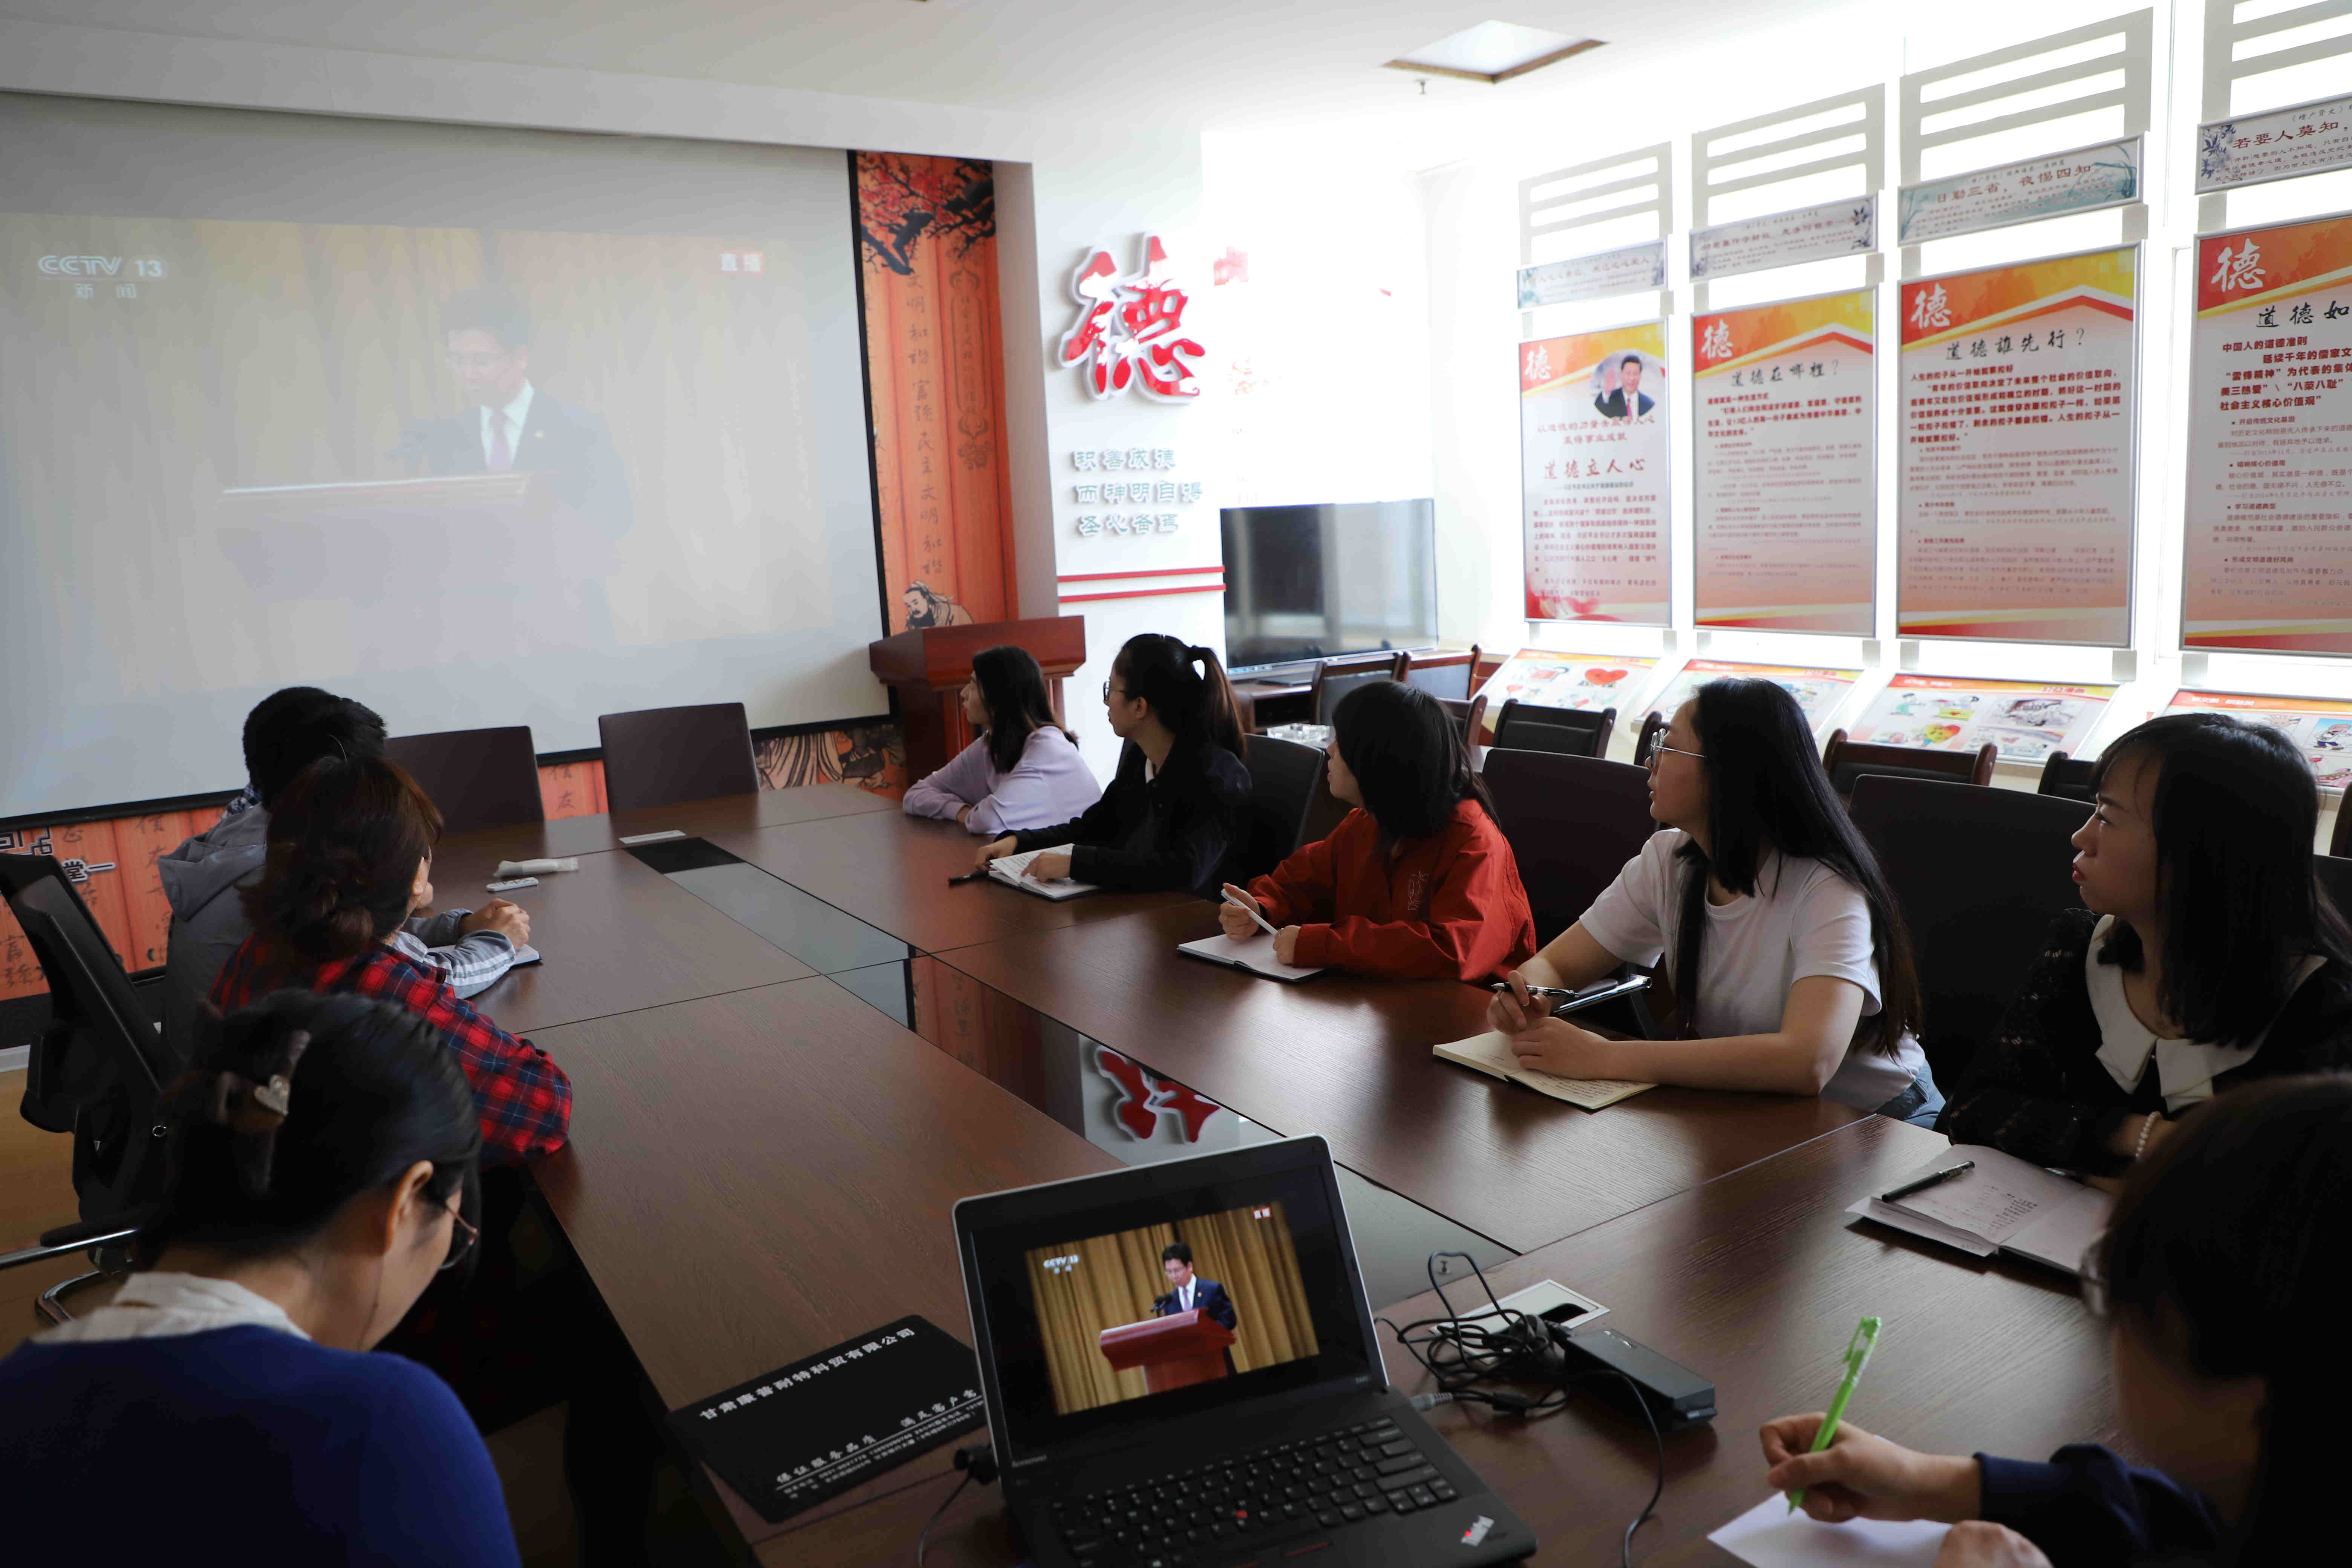 甘肃煤勘院组织团员青年观看庆祝中国共产主义青年团成立100周年大会直播